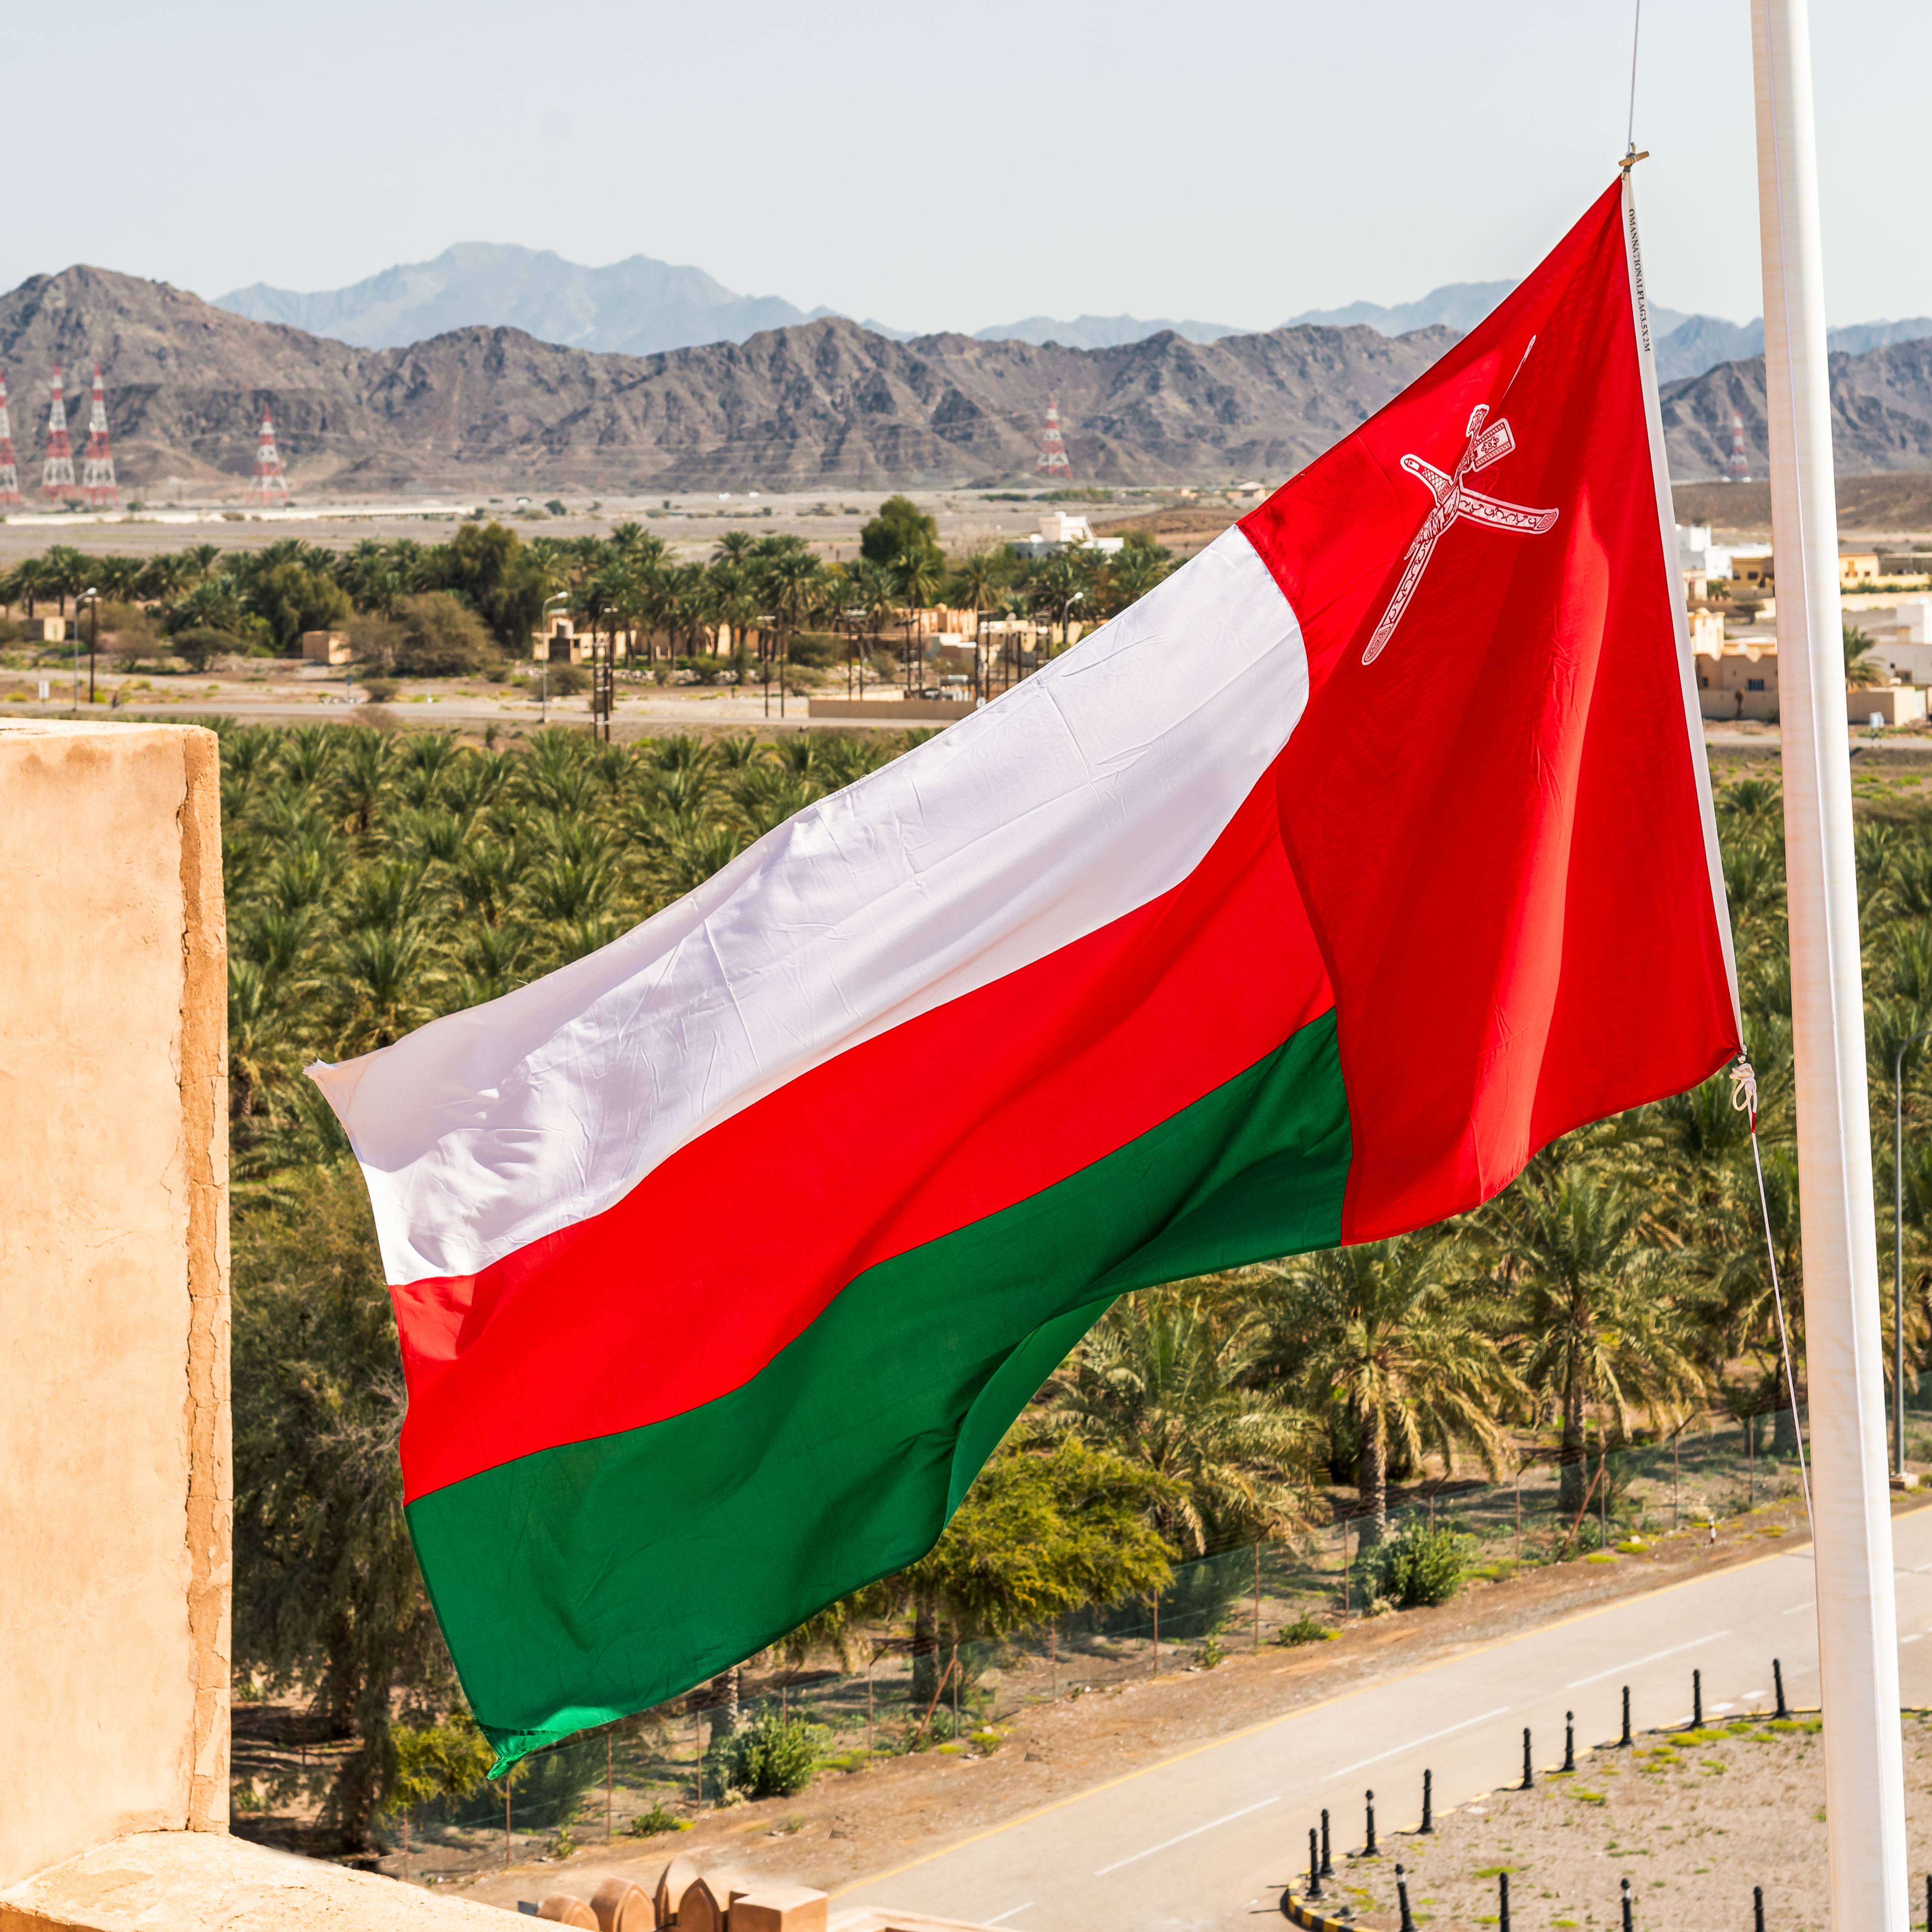 Tour completo dell’Oman